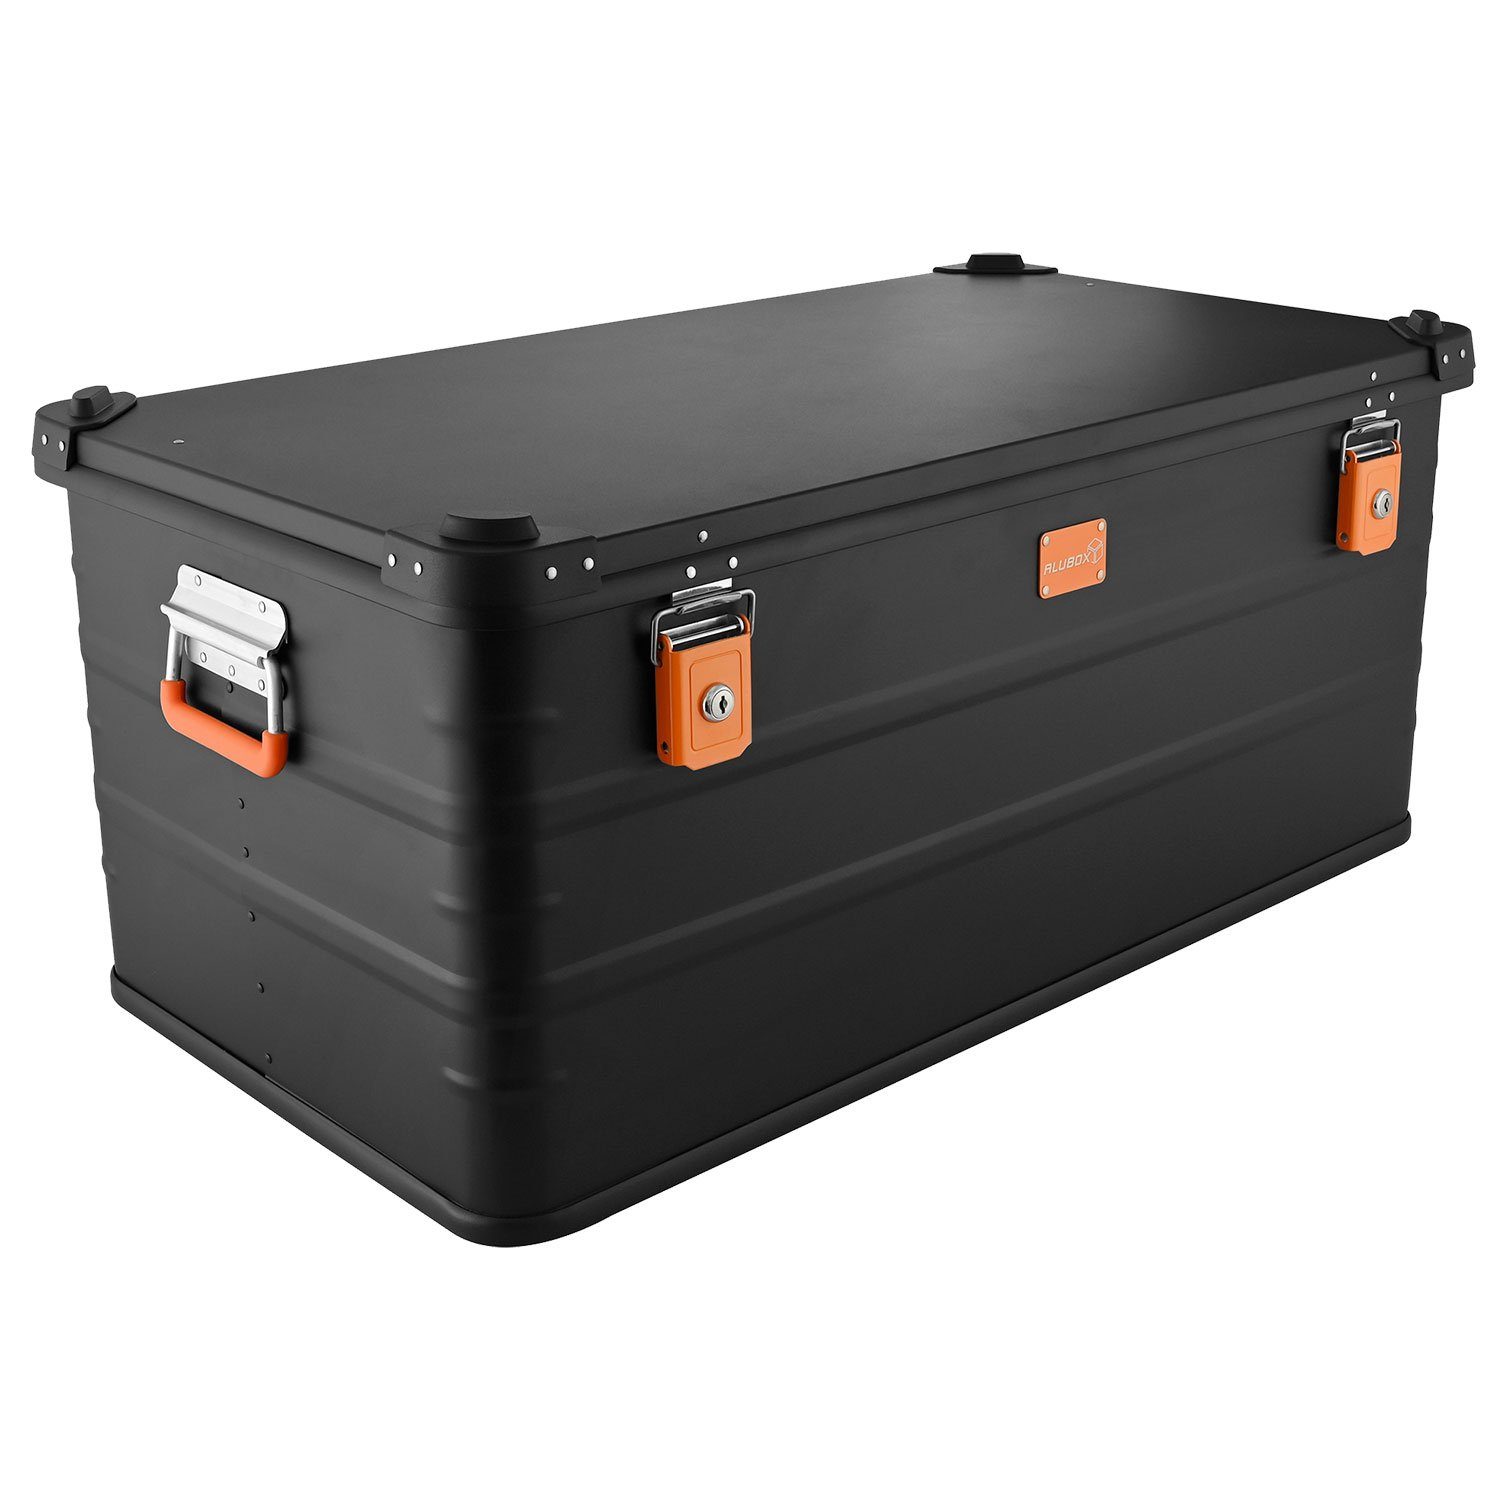 ALUBOX Aufbewahrungsbox Alukiste Tranportbox Premium E-Serie Black Edition (141 Liter), mit 2 Schlüsselschlösser